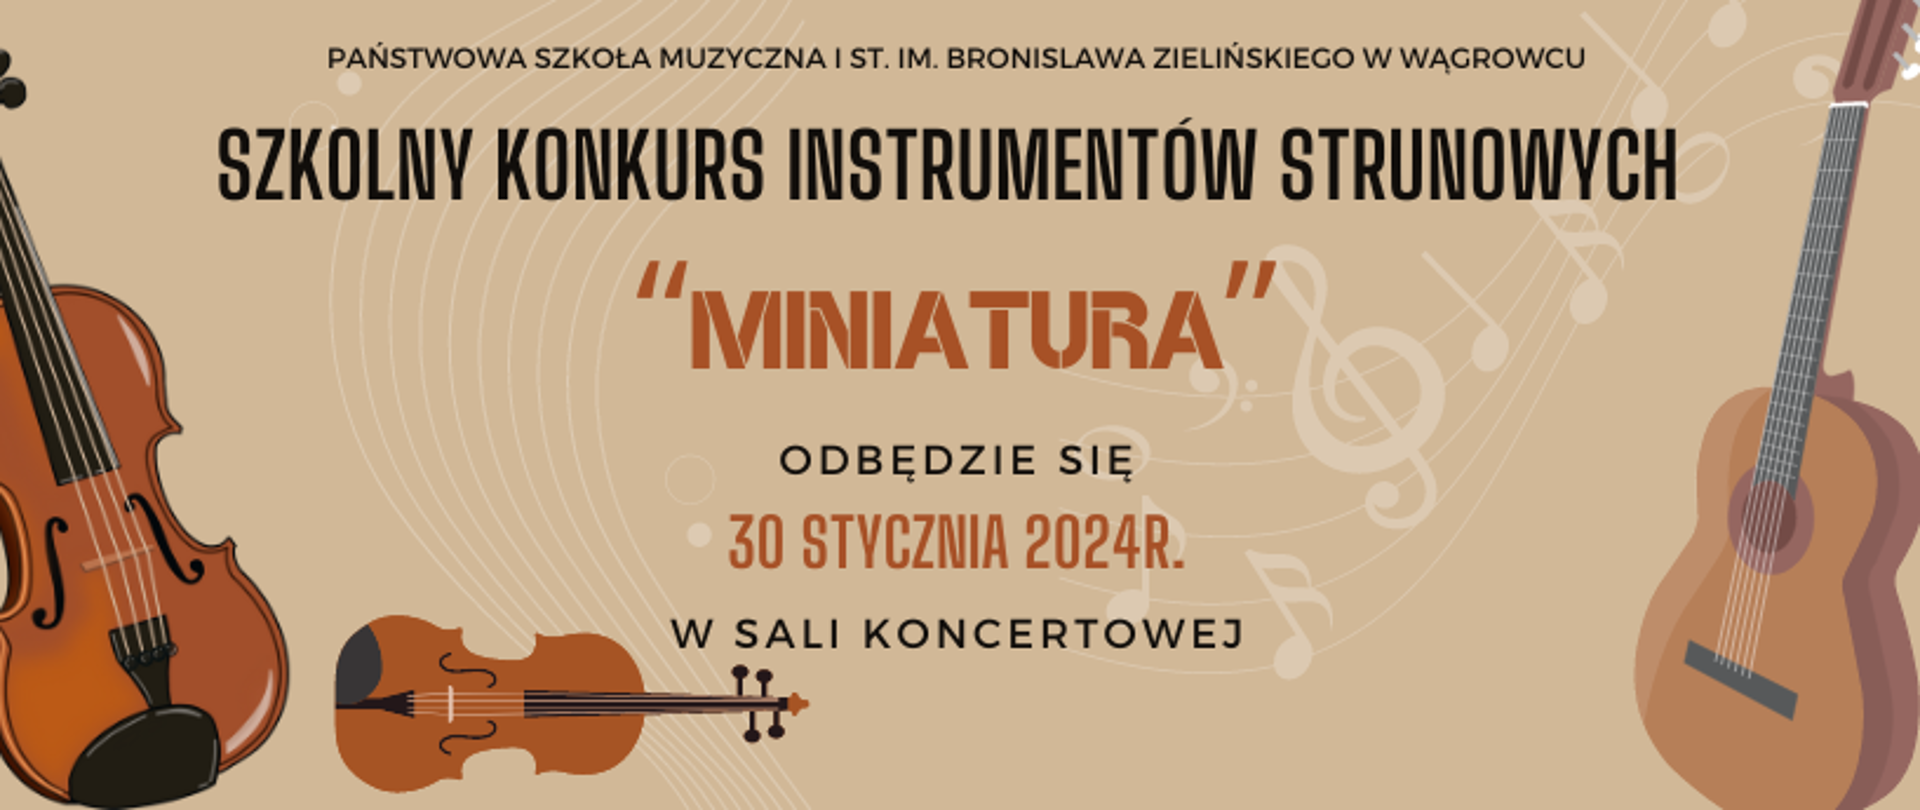 Na banerze reklamowym znajdują się informacje dotyczące konkurs instrumentów strunowych który ma się odbyć 30 stycznia 2024r na sali koncertowej Państwowej Szkoły Muzycznej I st. im. B Zielińskiego w Wągrowcu